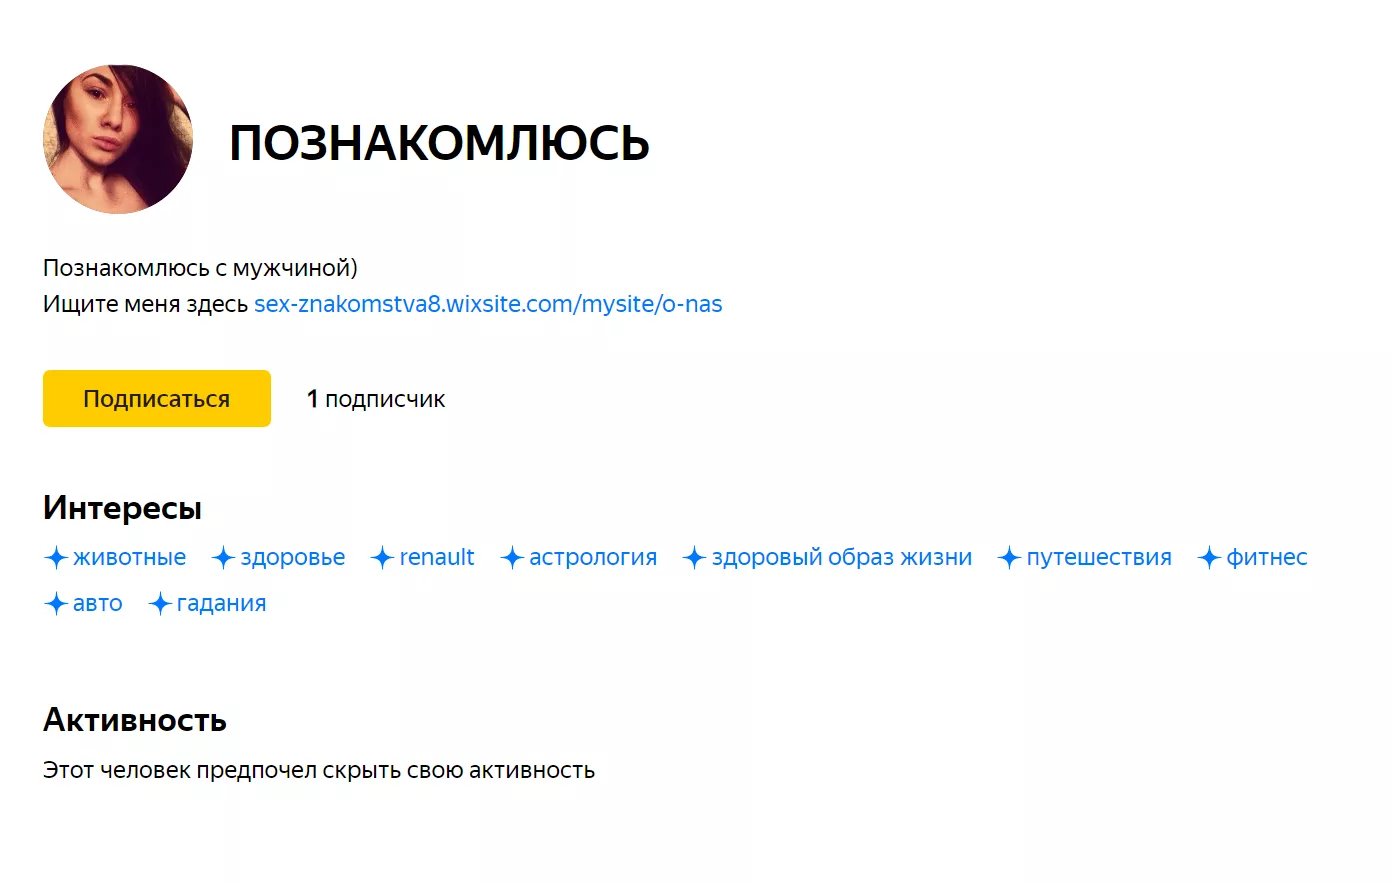 По Яндекс.Дзену пошла волна спама в комментариях